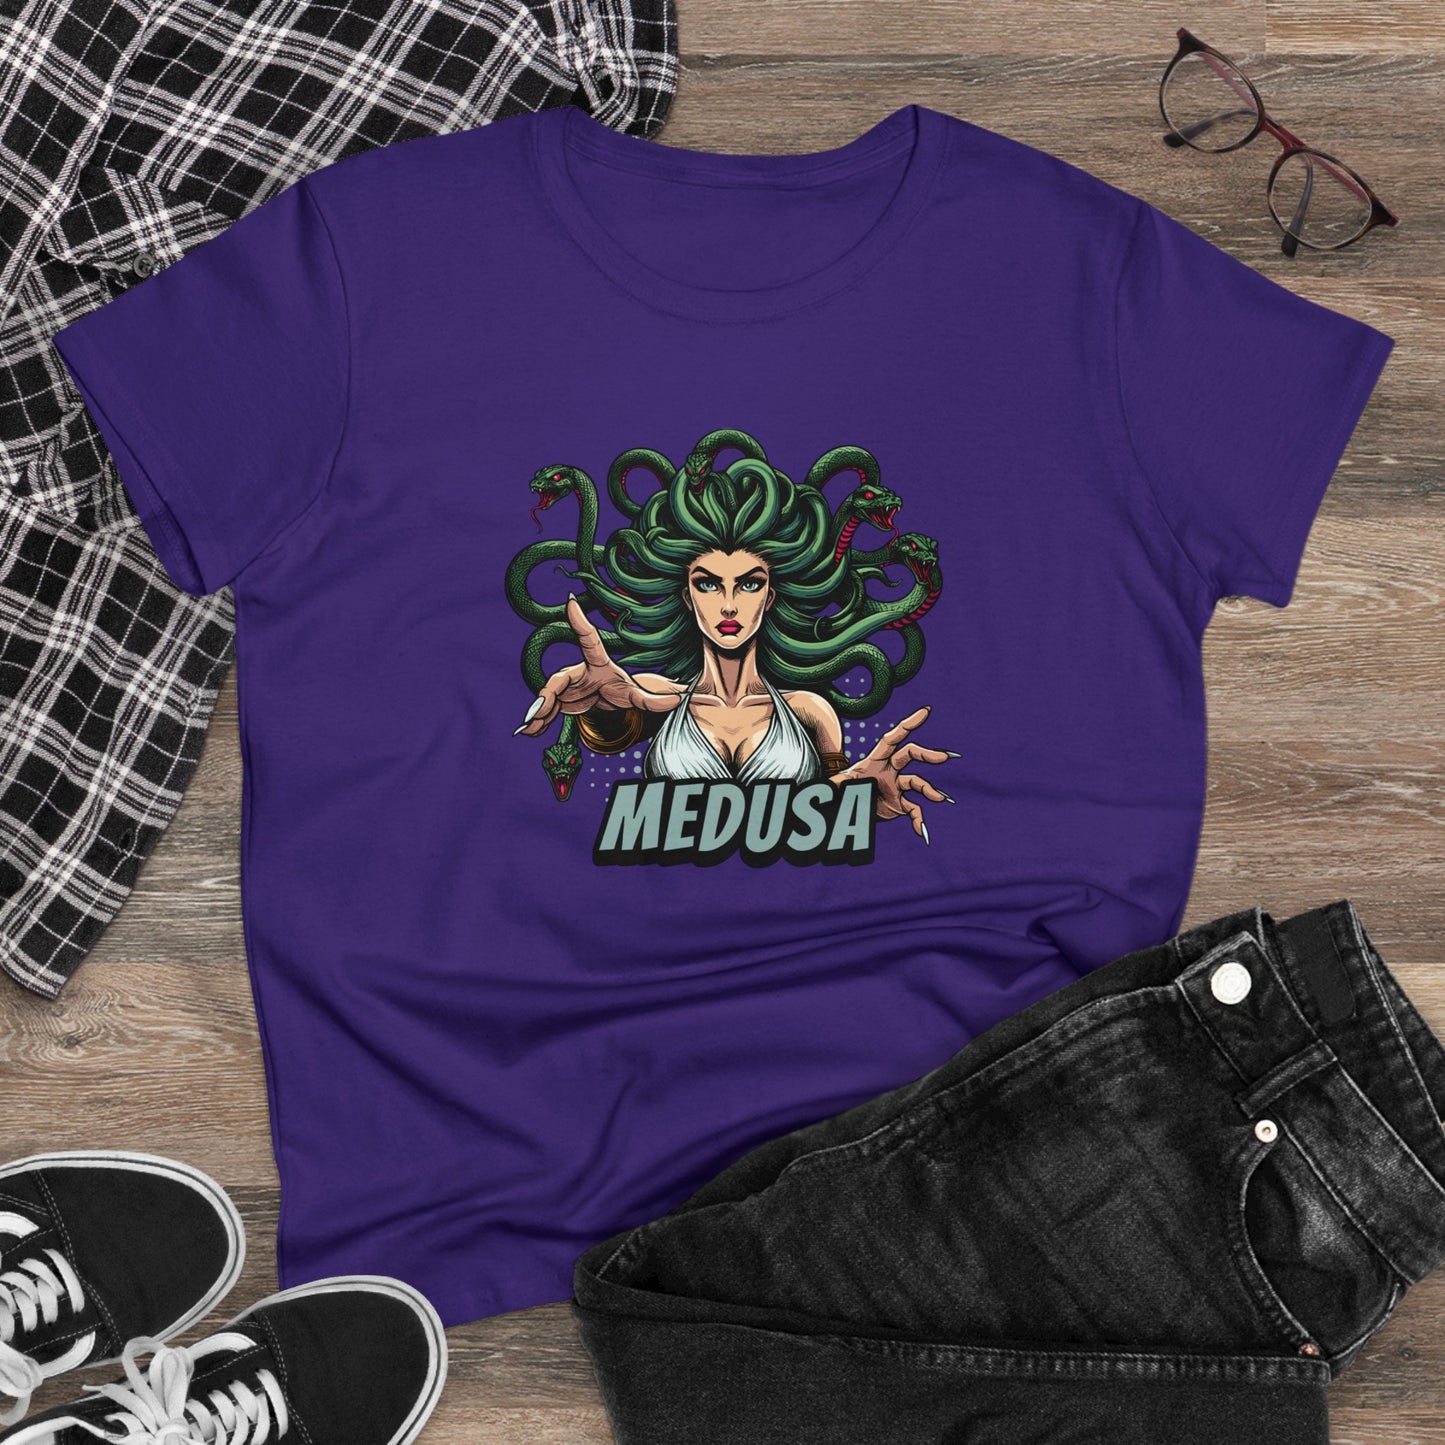 Medusa, Women's Midweight Cotton Tee